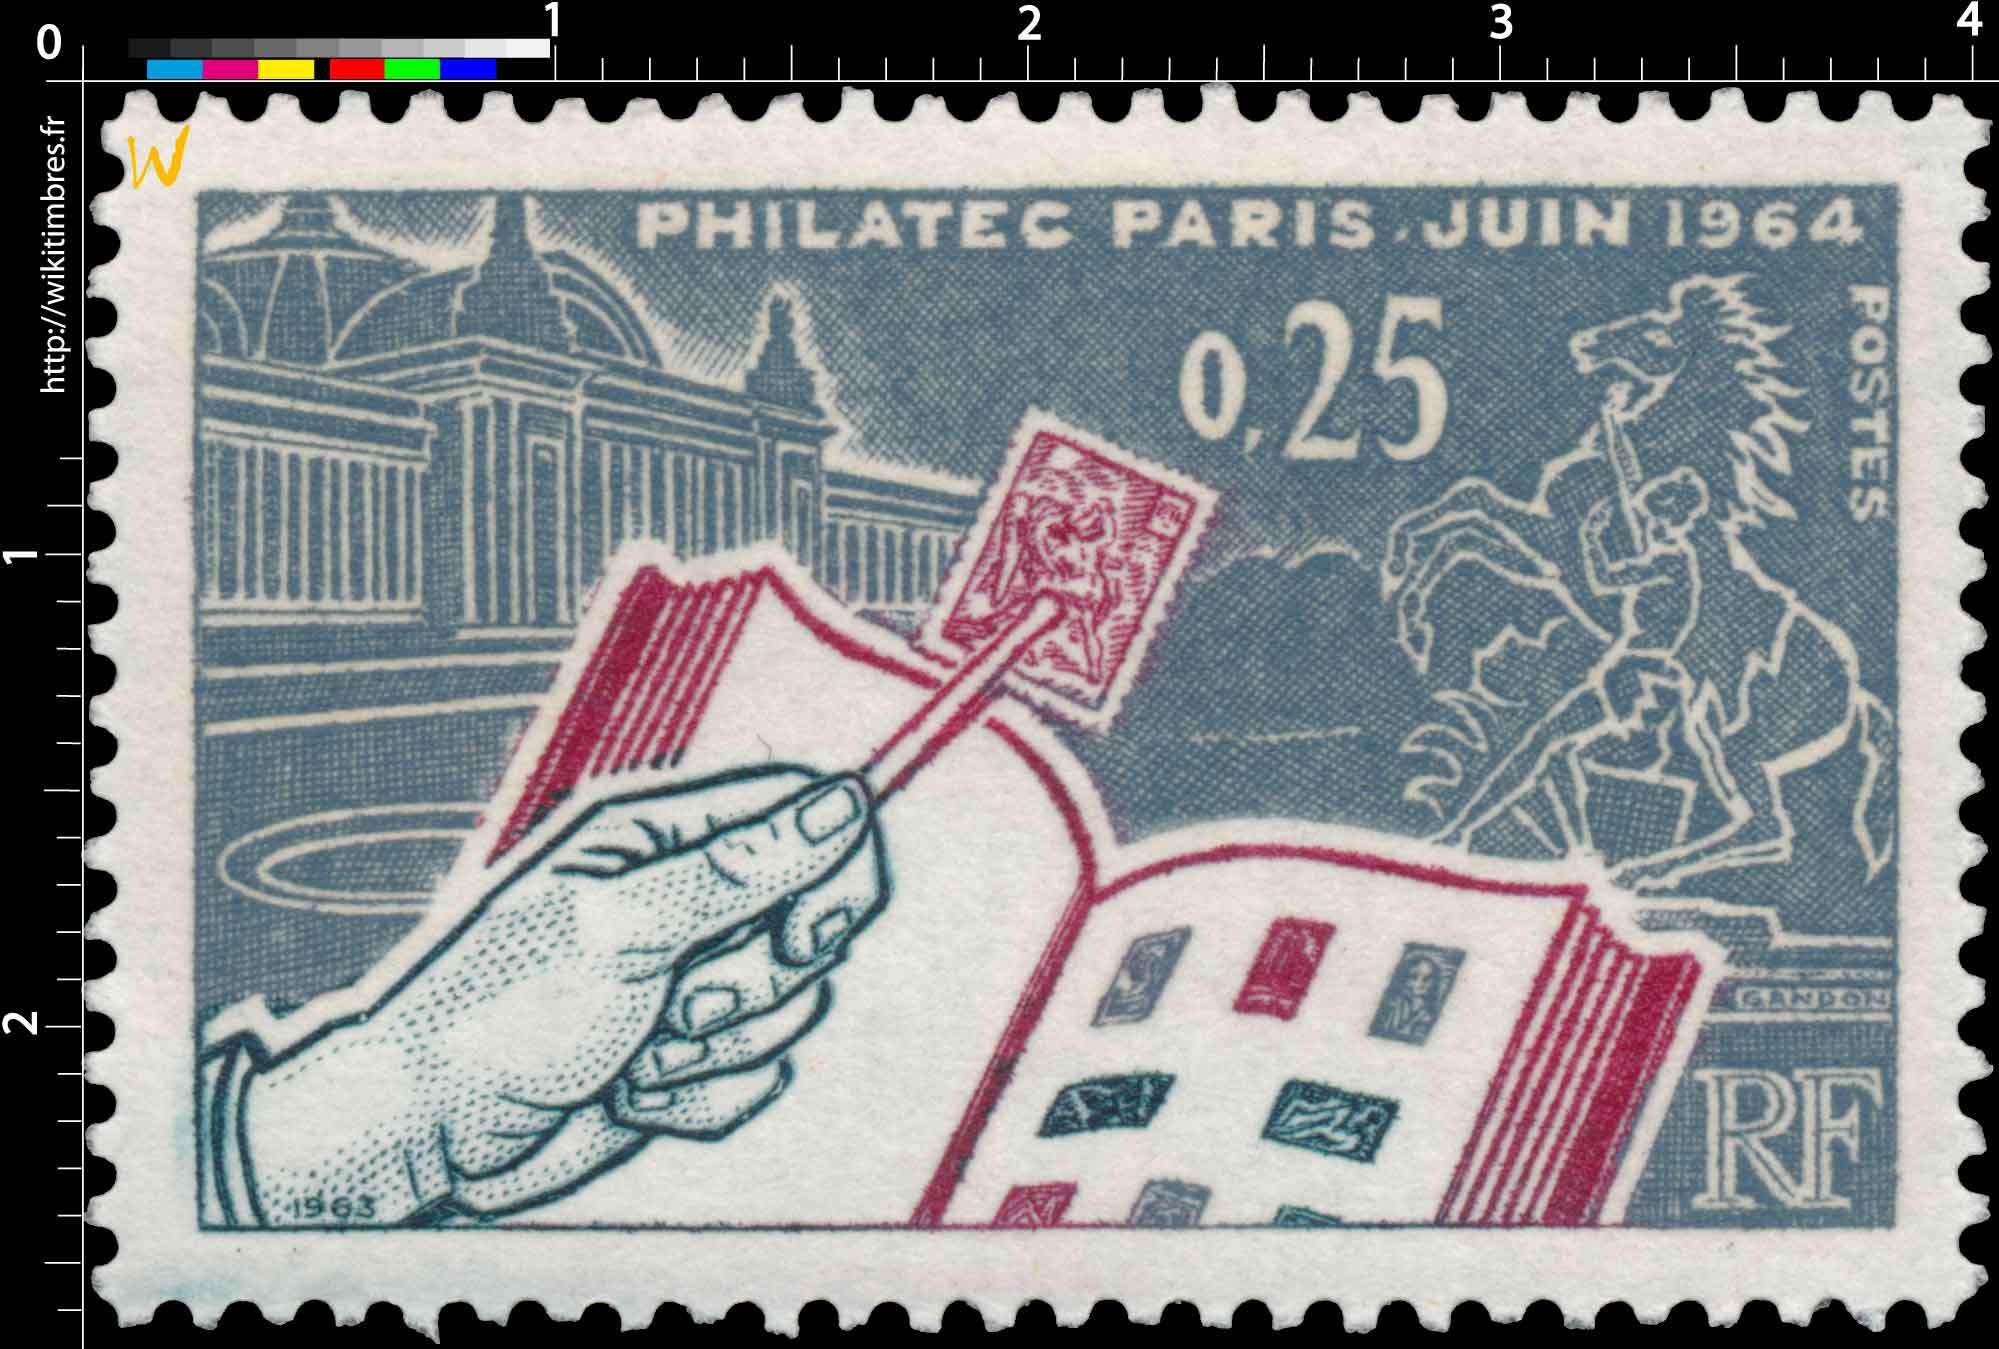 1963 PHILATEC PARIS JUIN 1964